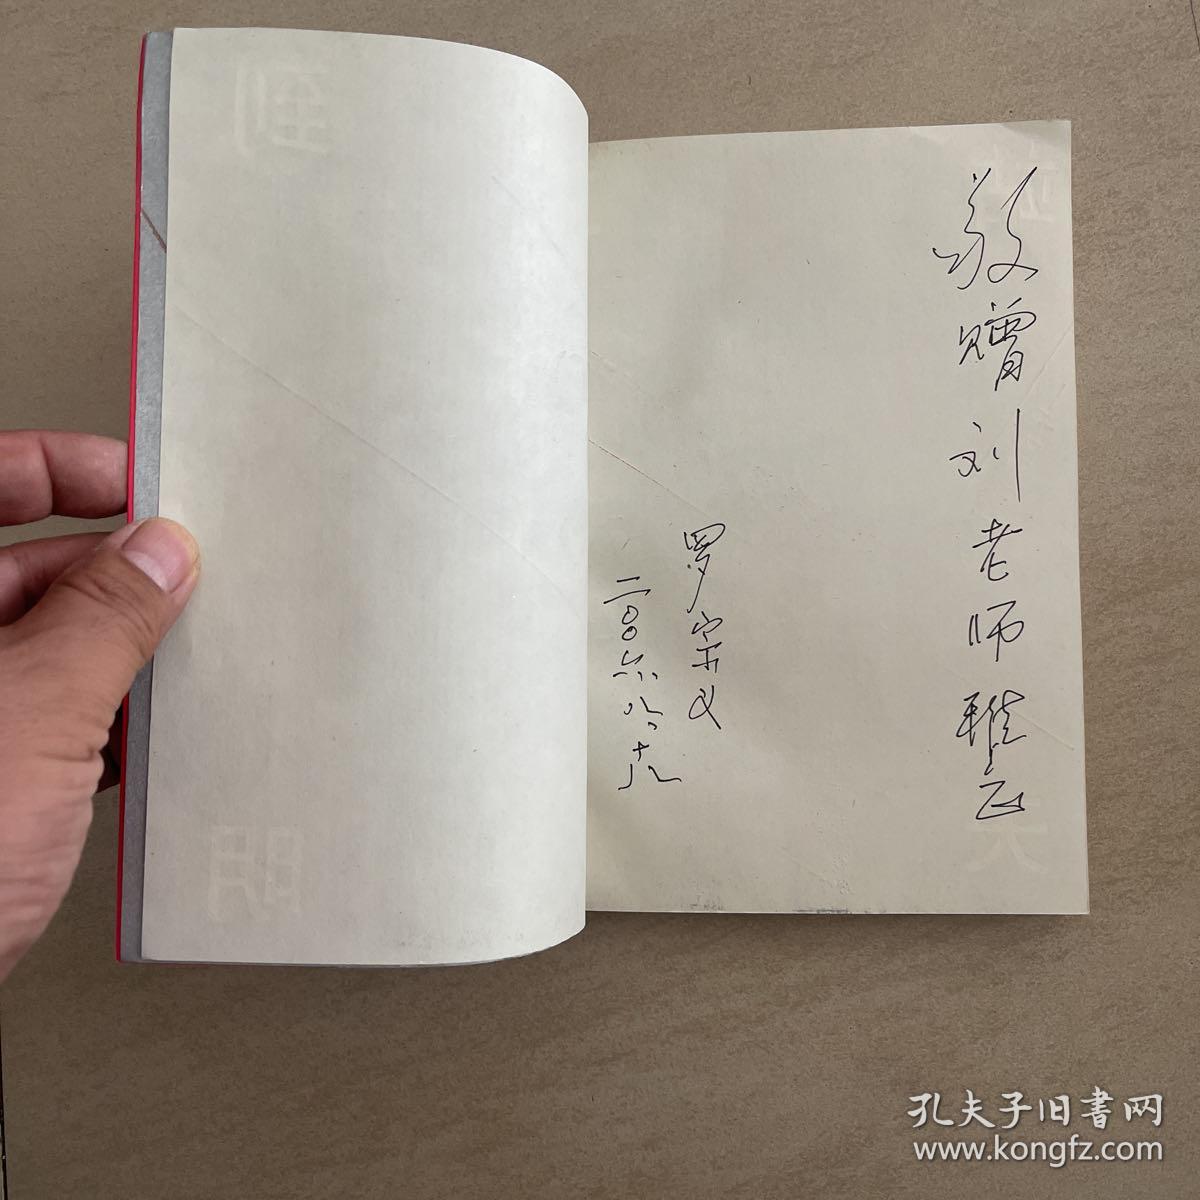 站立到天明  中国现代诗歌概览  作者罗宗义签赠本 仅印3000册